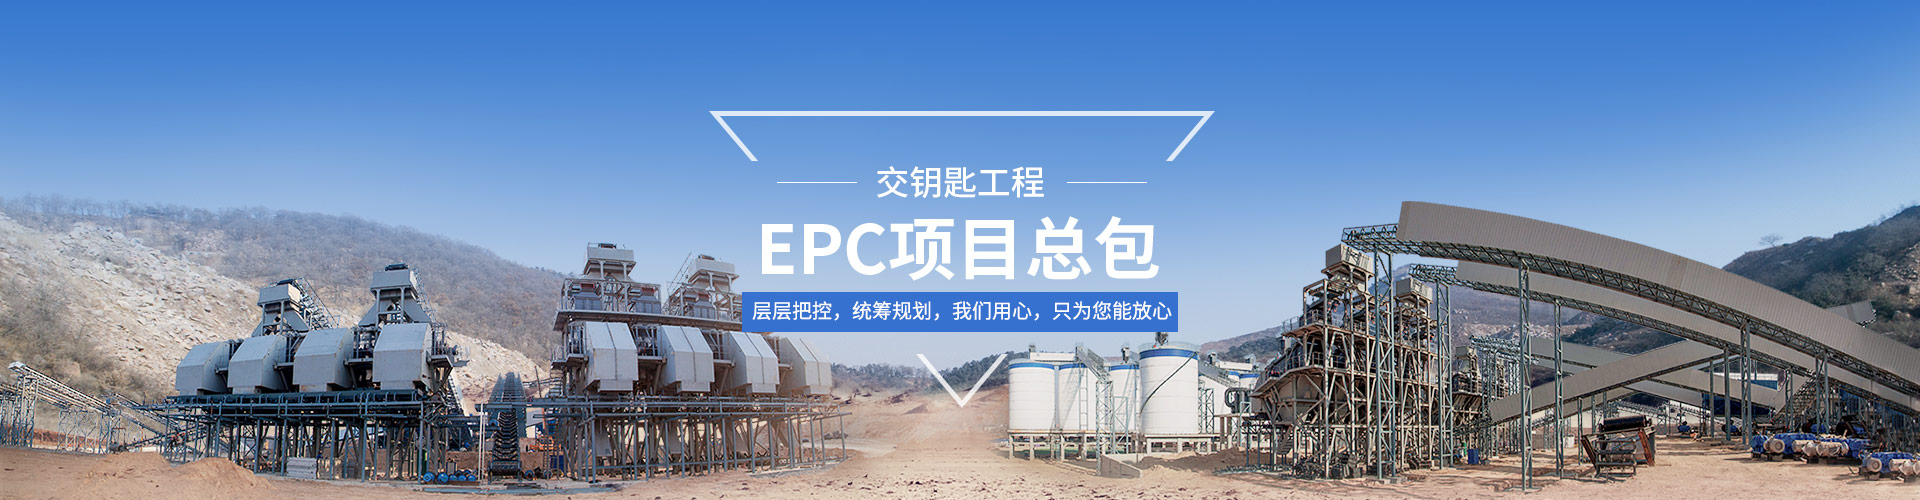 EPC工程总承包